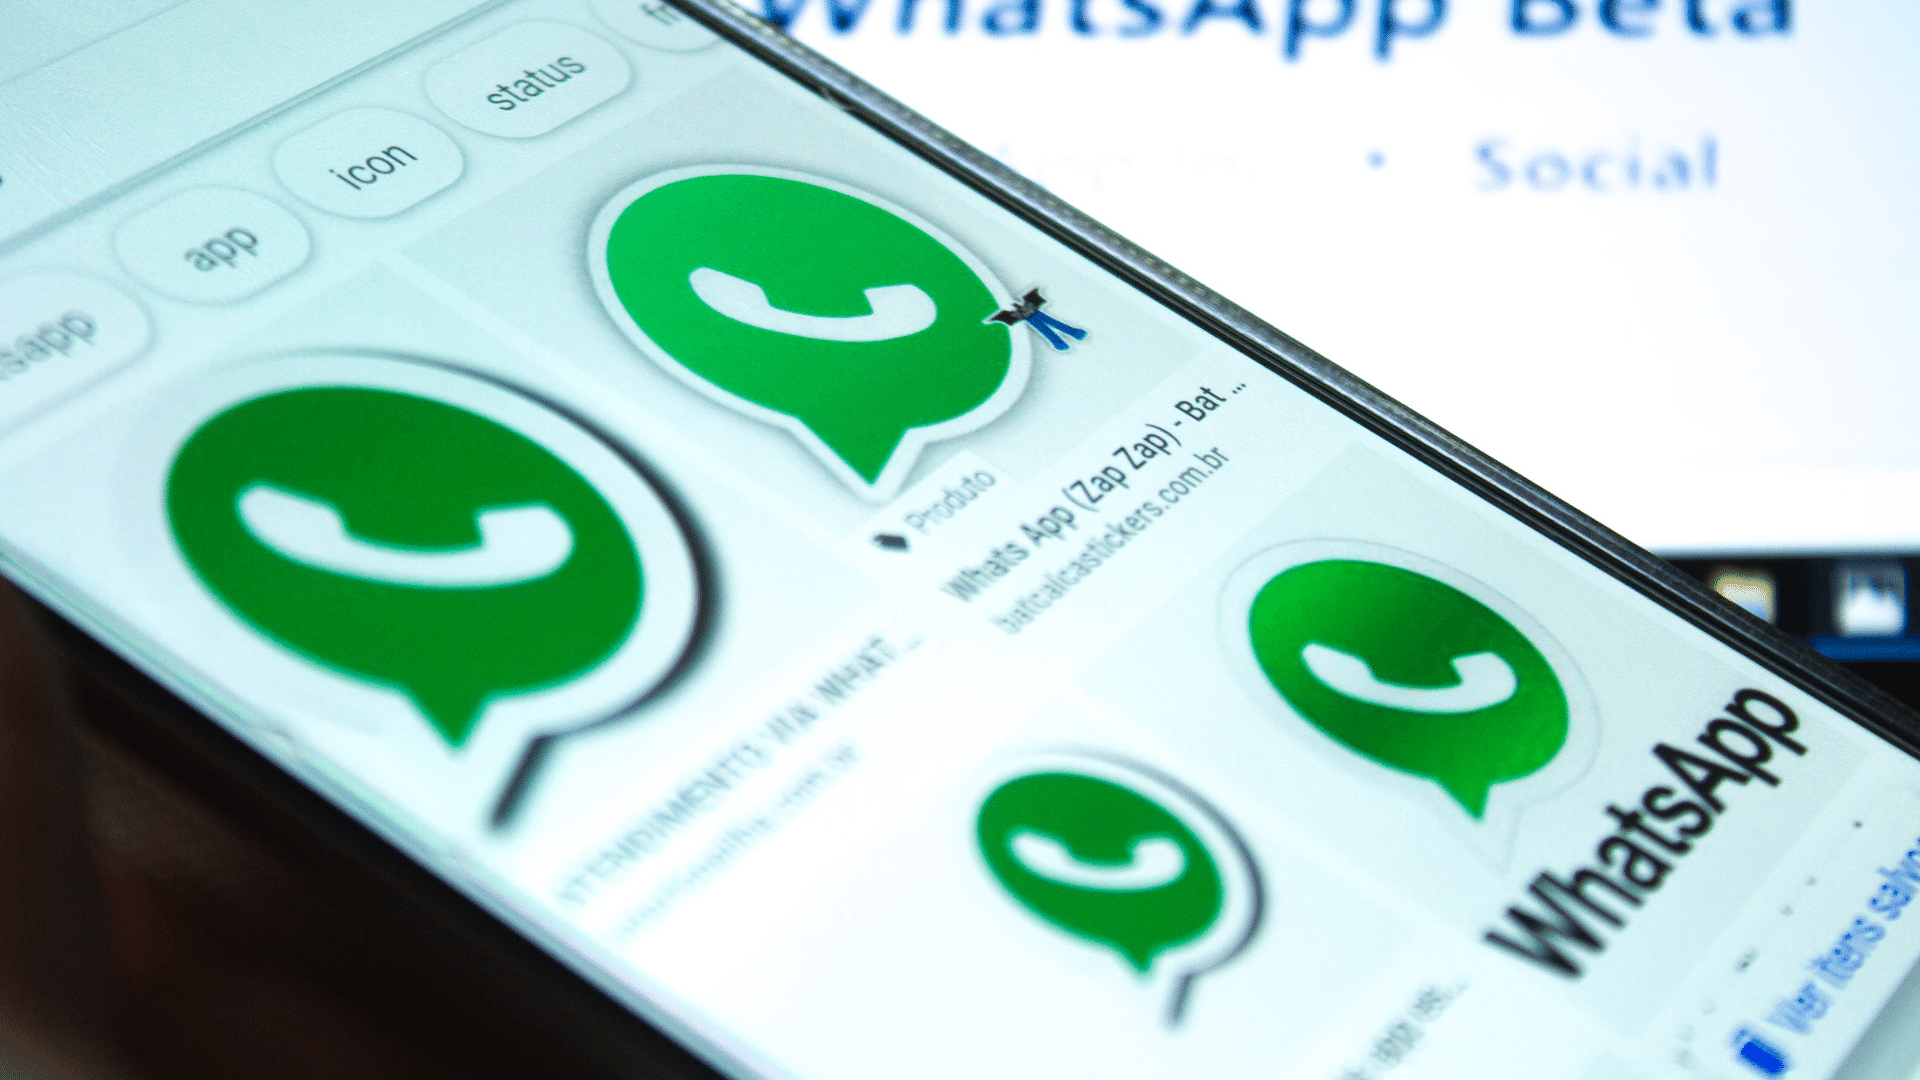 WhatsApp, uma arma eleitoral sem lei no Brasil